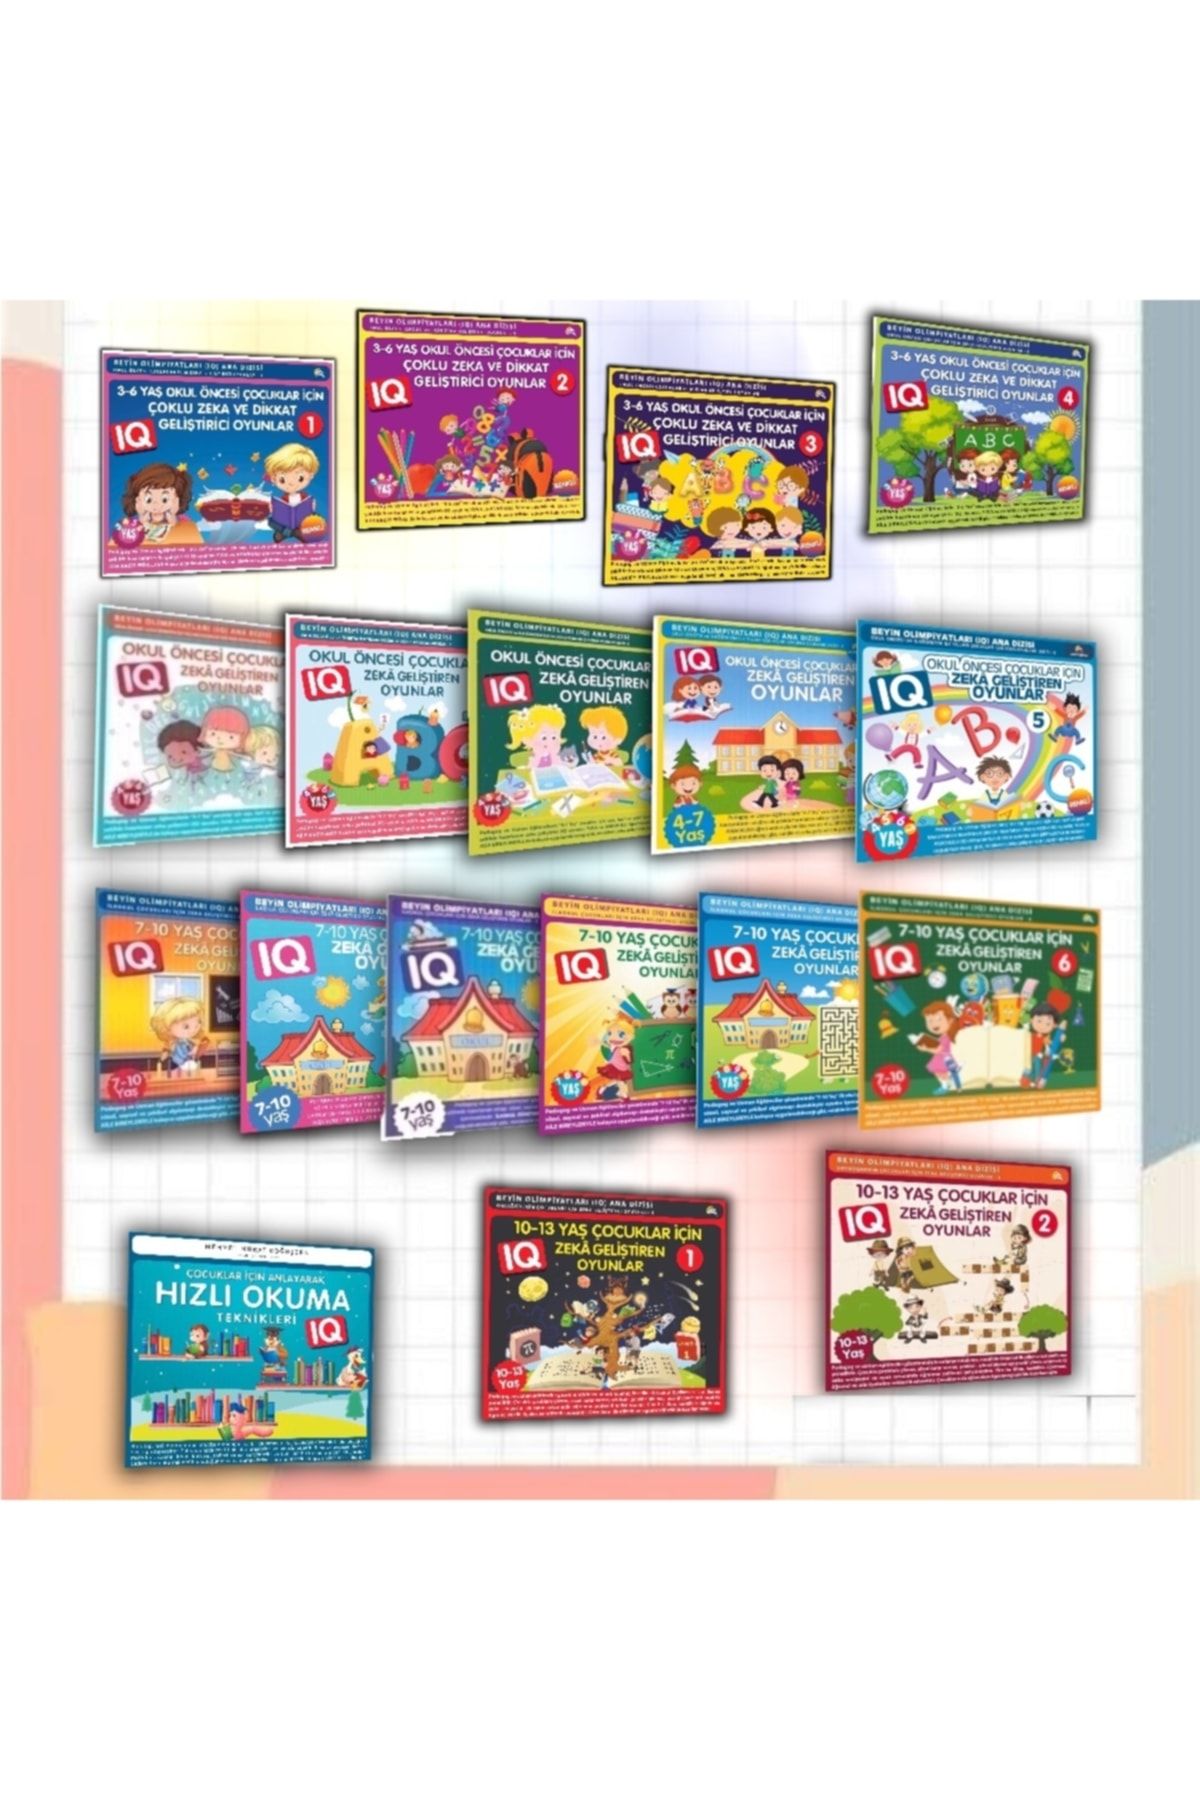 Ekinoks Yayın Grubu Çocuklar Için Iq Zeka Geliştiren Akıl Oyunları -18 Kitaplık Süper Set ( 1 Adet Roman Hediyelidir)